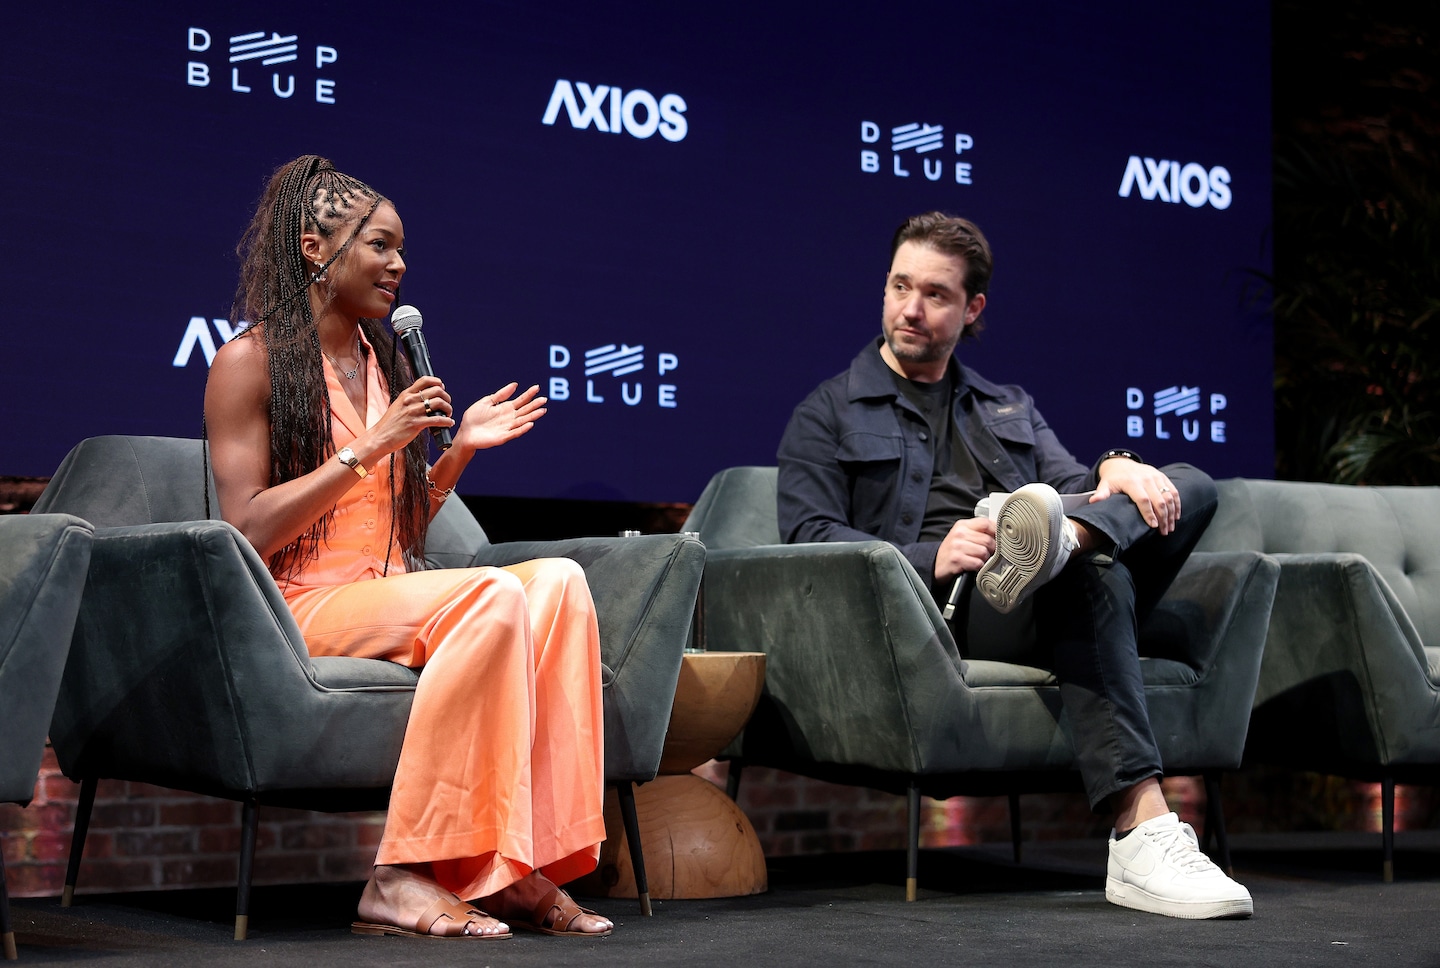 Alexis Ohanian, kadınlar atletizmine eşi benzeri görülmemiş yatırım yapıyor